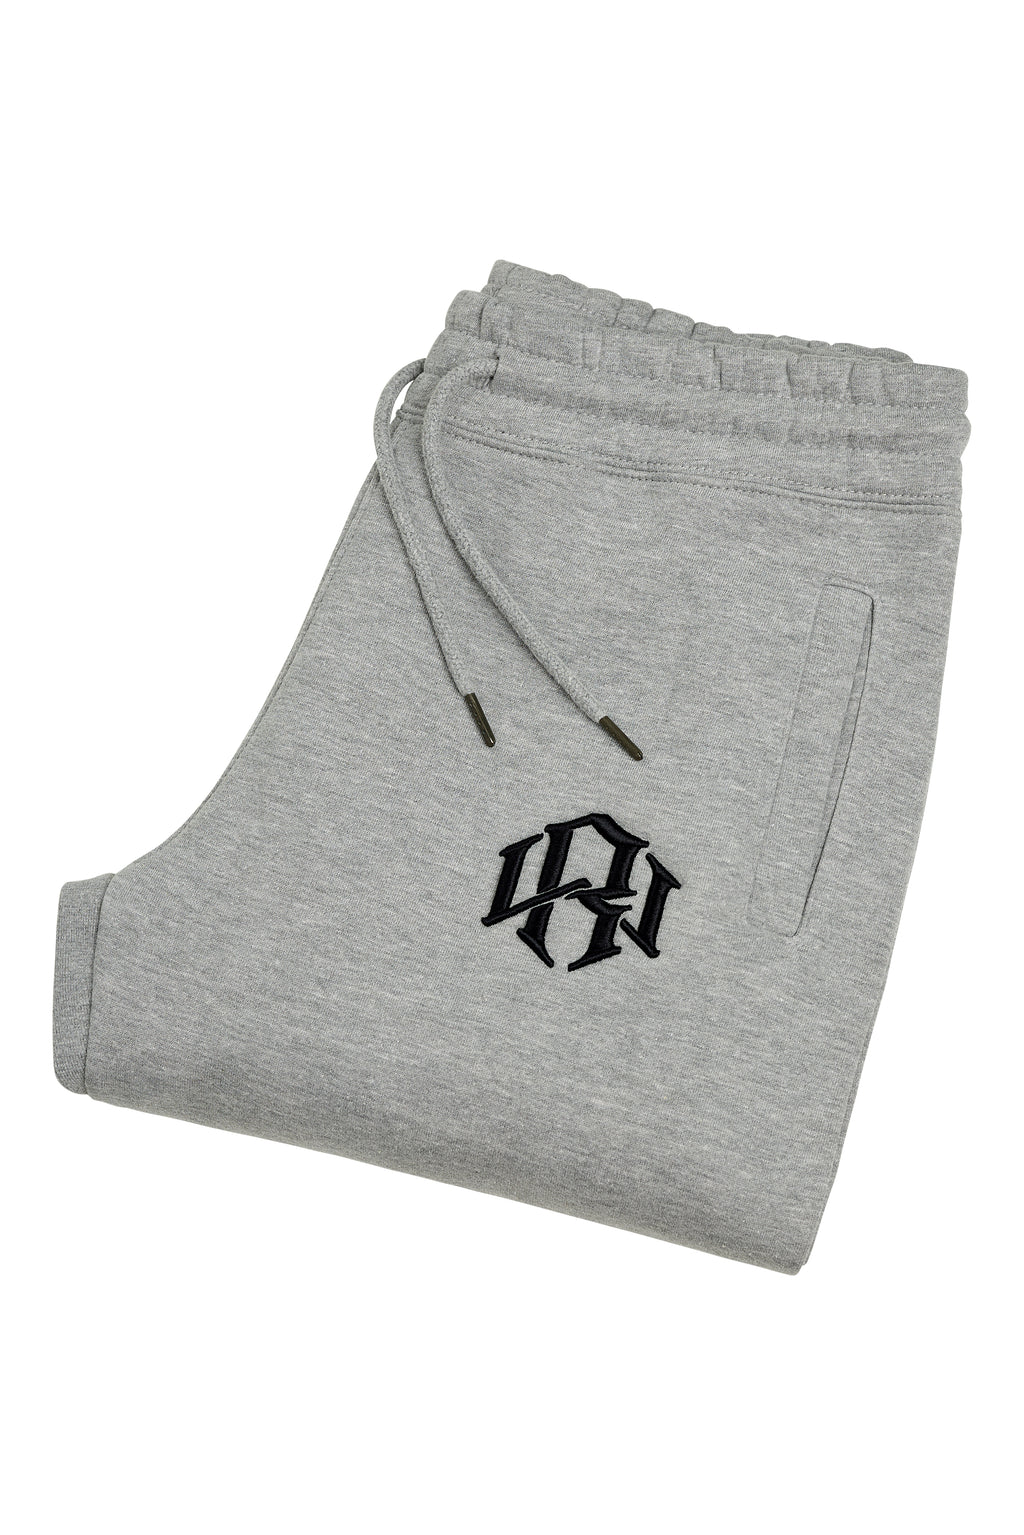 Renowned Wear in Heavyweight Logo Grey Heather Sweatpants 3D R.W